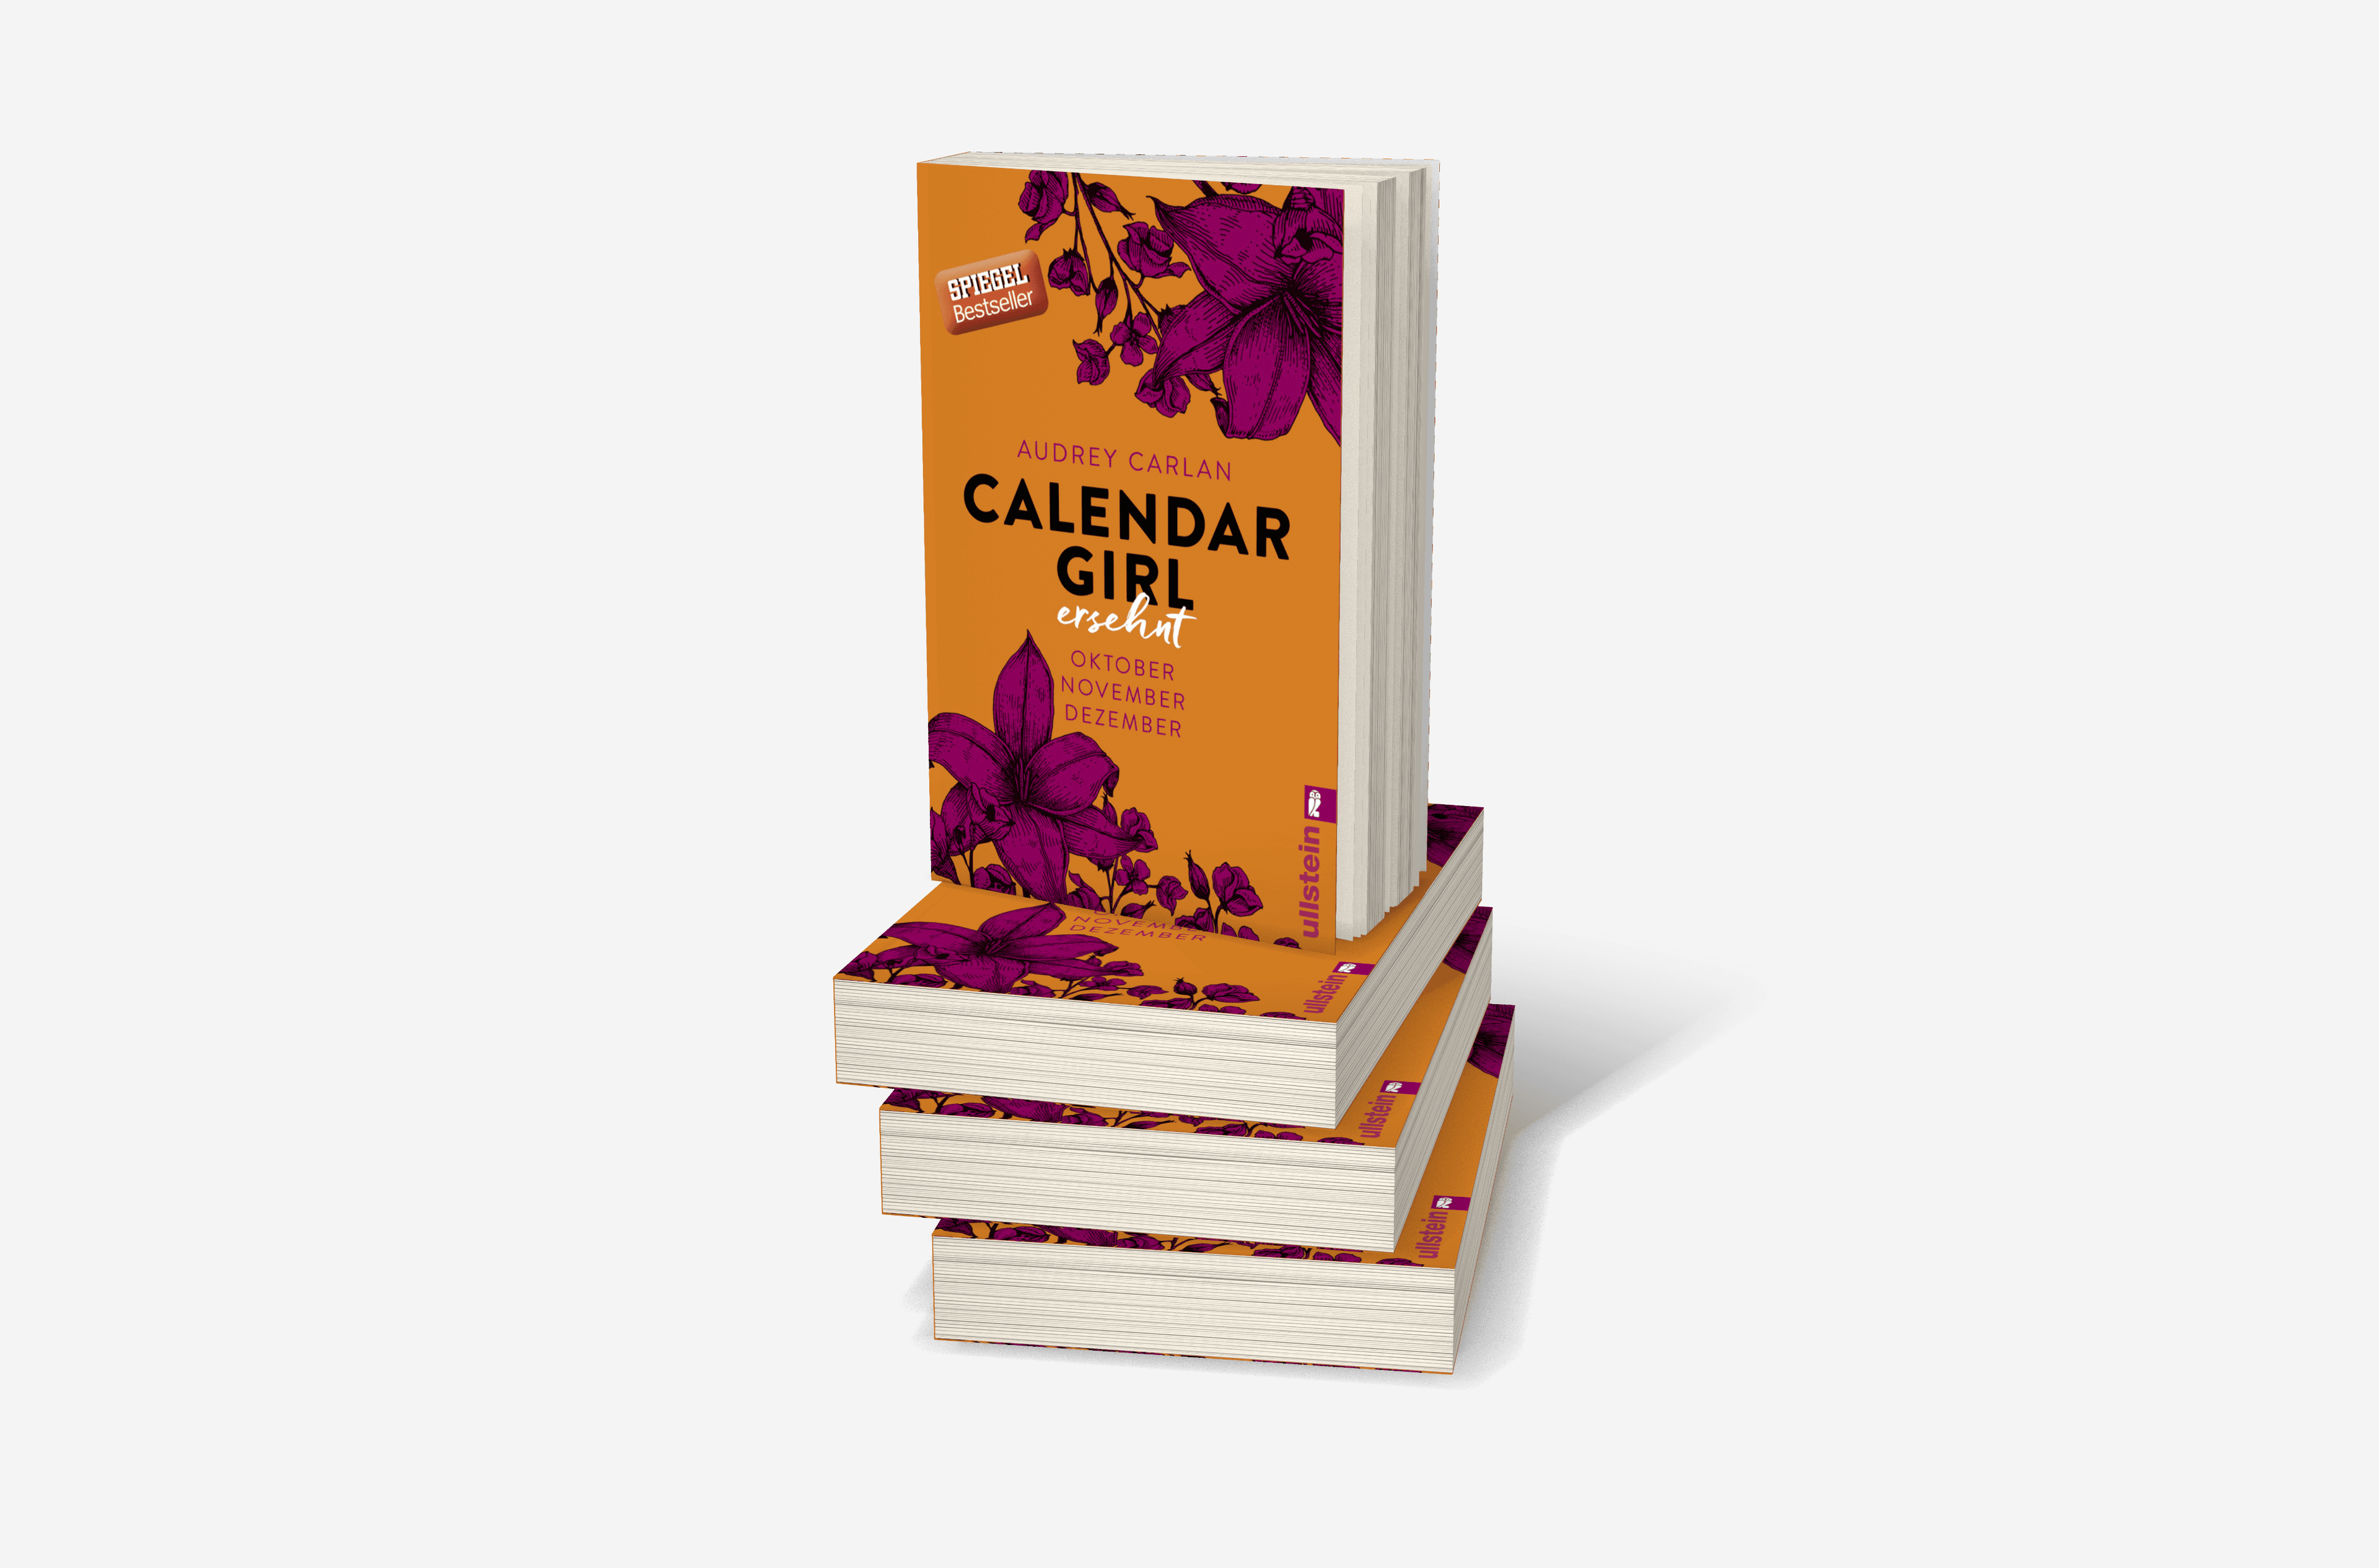 Buchcover von Calendar Girl - Ersehnt (Calendar Girl Quartal 4)